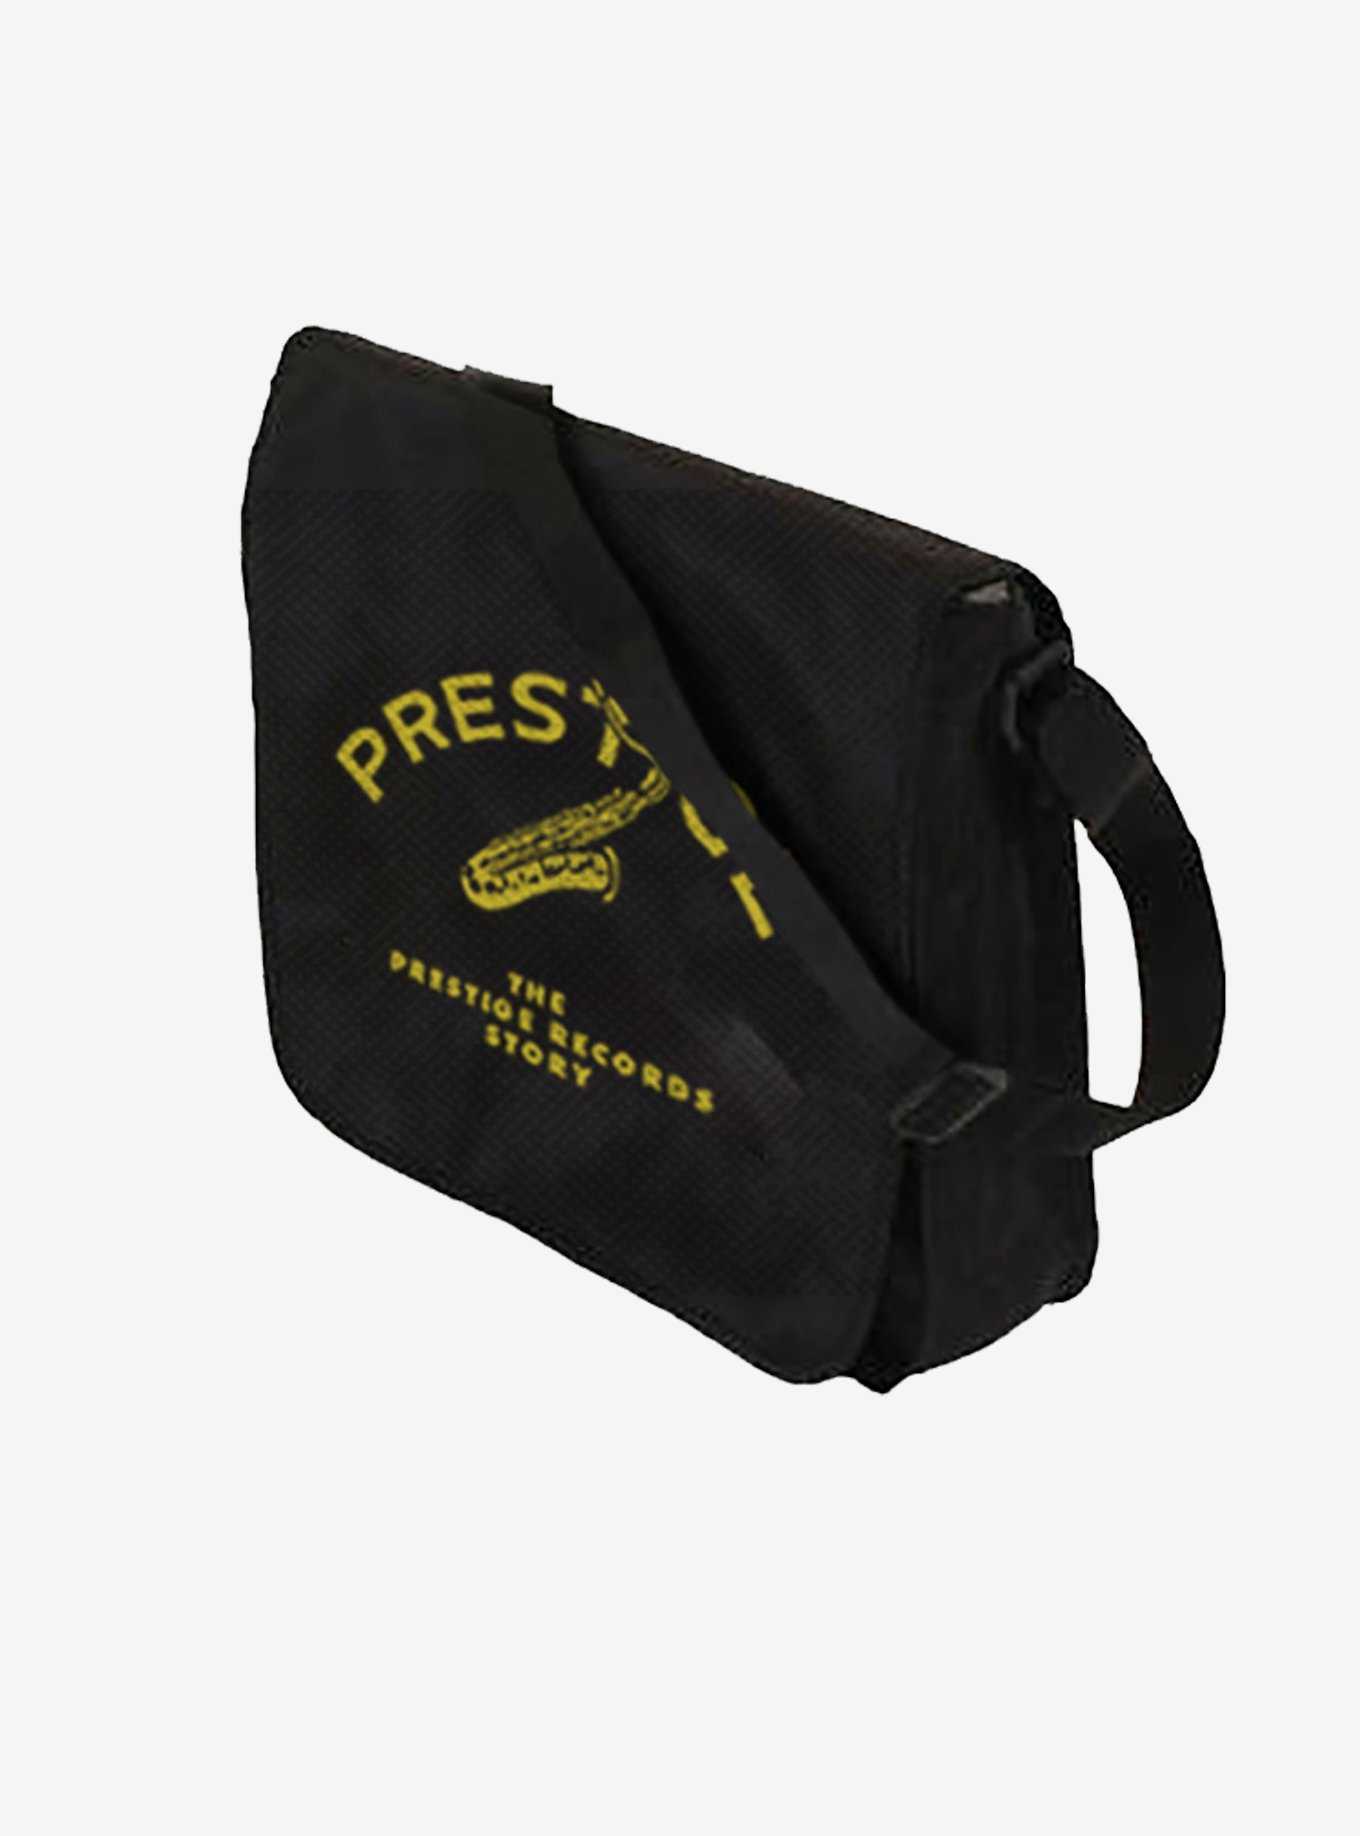 Rocksax Prestige Records Flap Top Vinyl Record Crossbody Bag, , hi-res